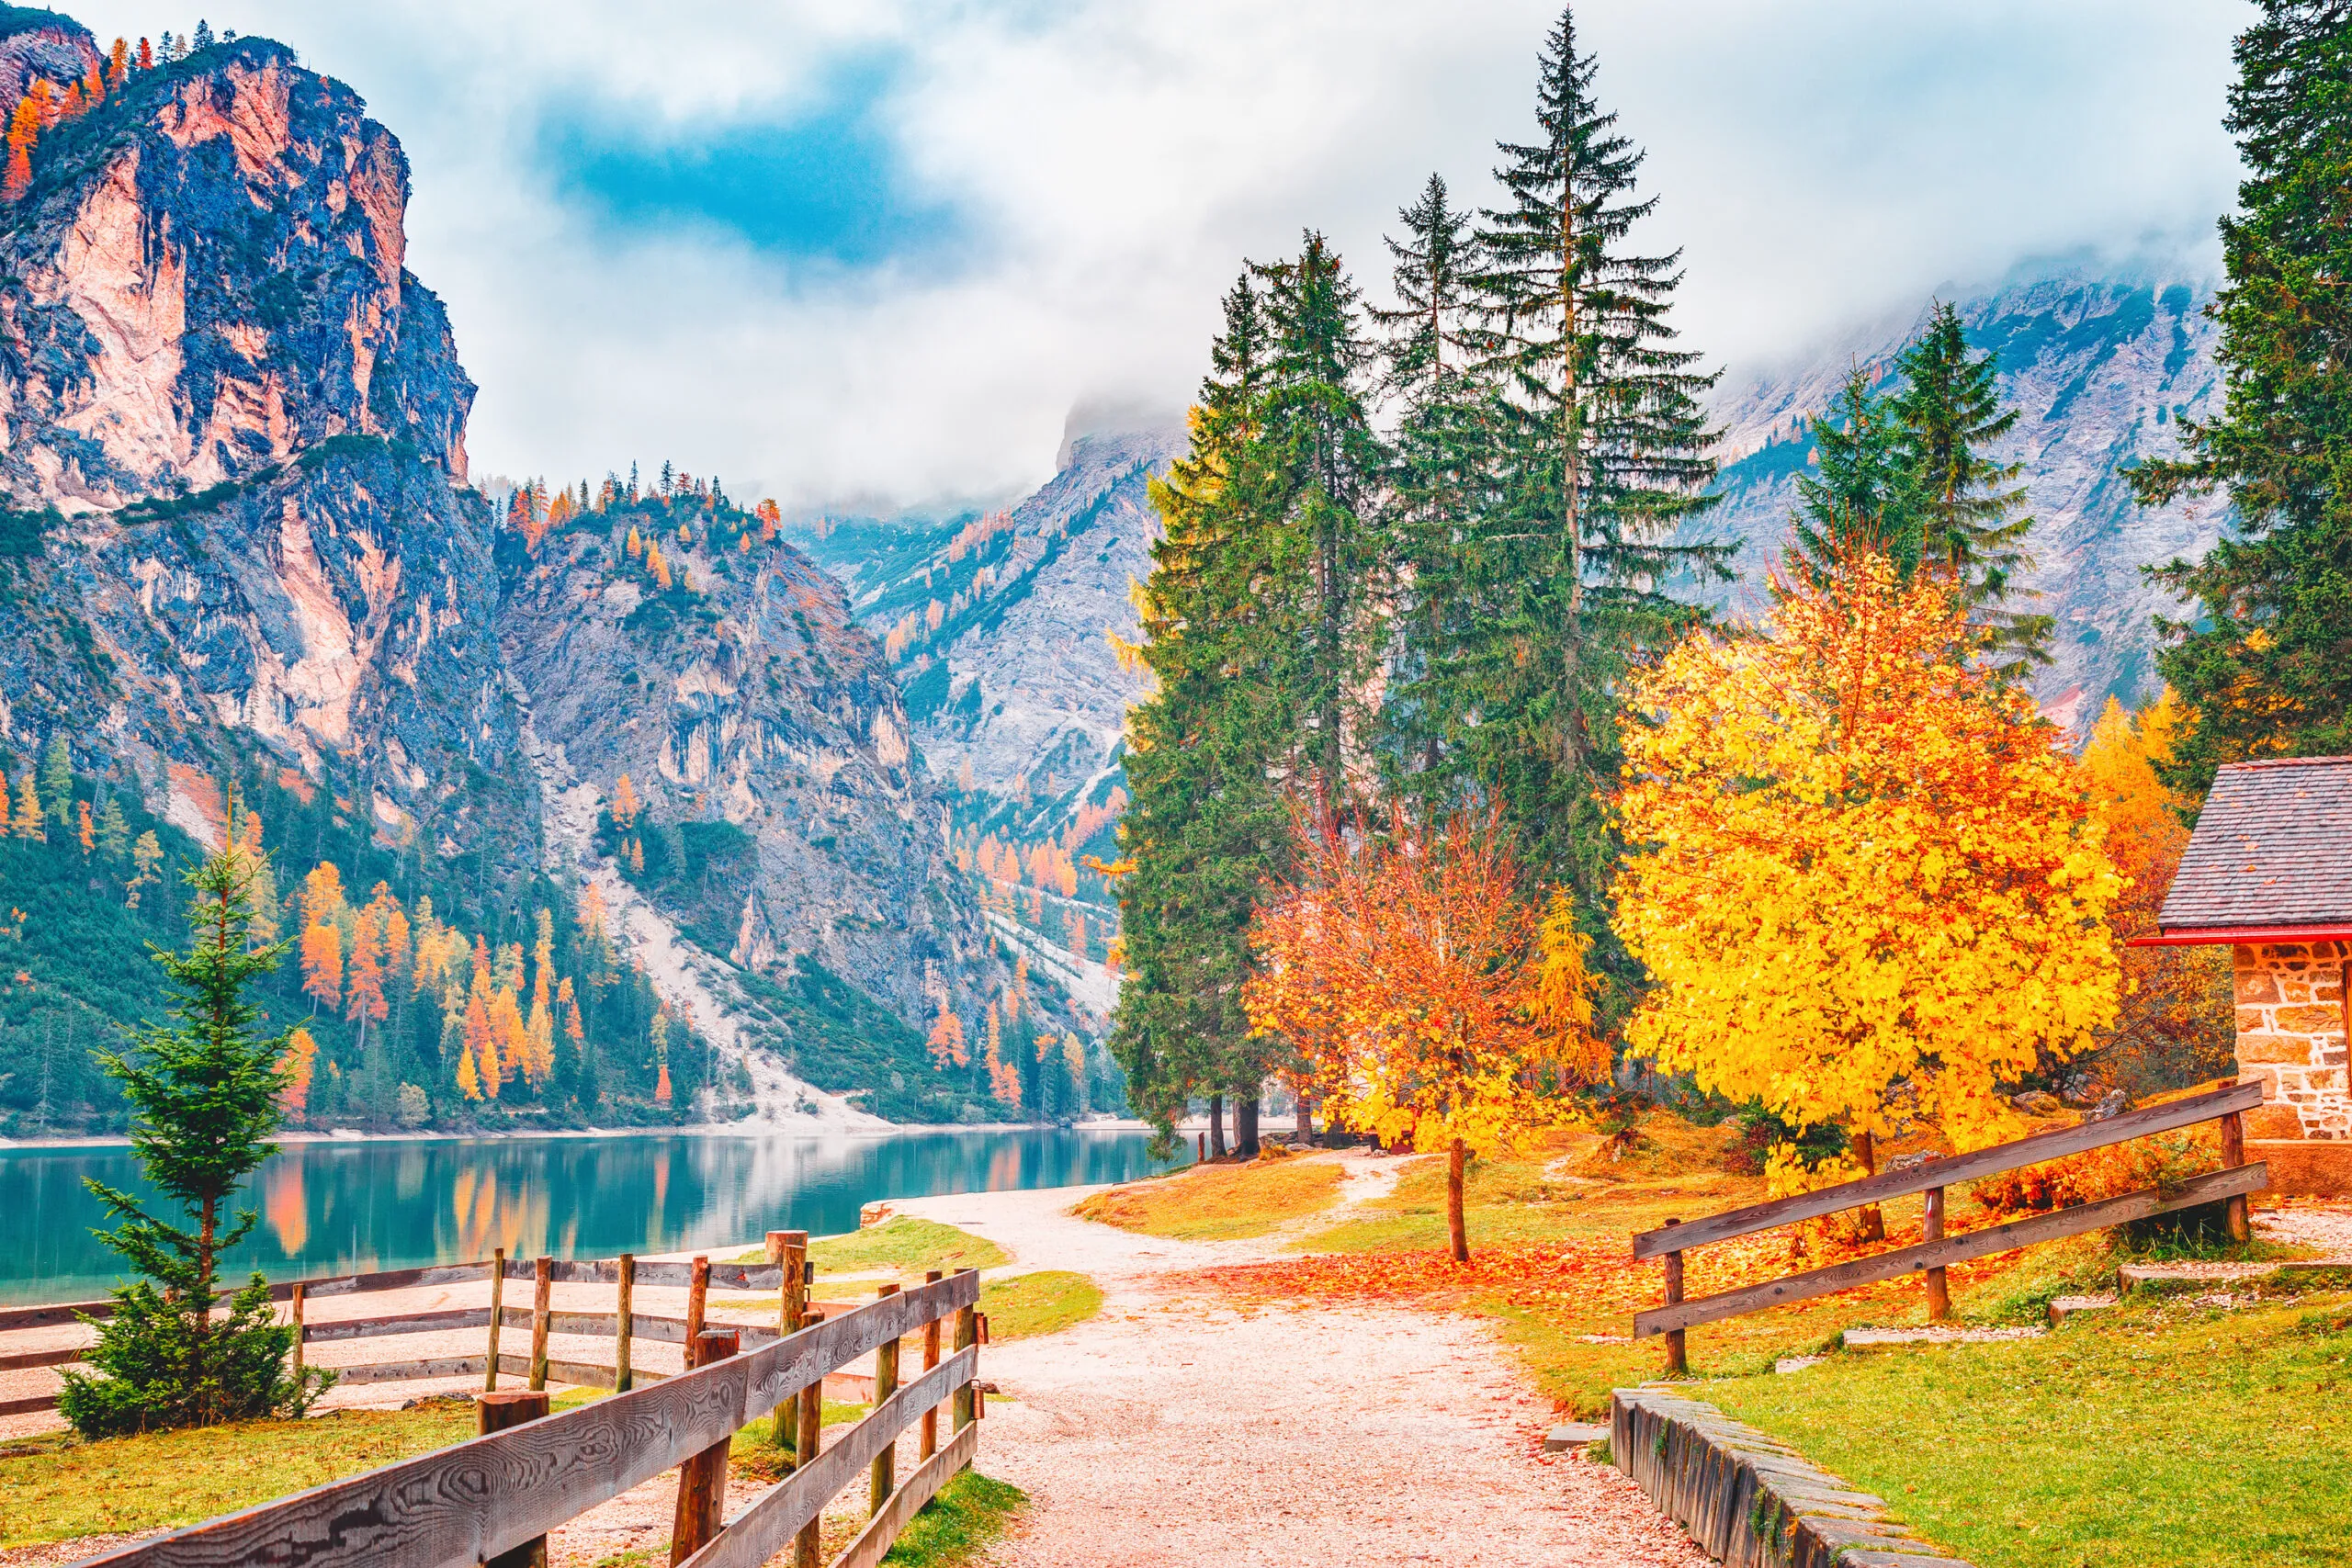 Efterårslandskab ved Braies-søen - lago di Braies på alpe-baggrund i Sydtyrol i Italien. Europæisk berømt og meget populært rejsemål. Efterårslandskab med gule blade på træerne ved søens bred.